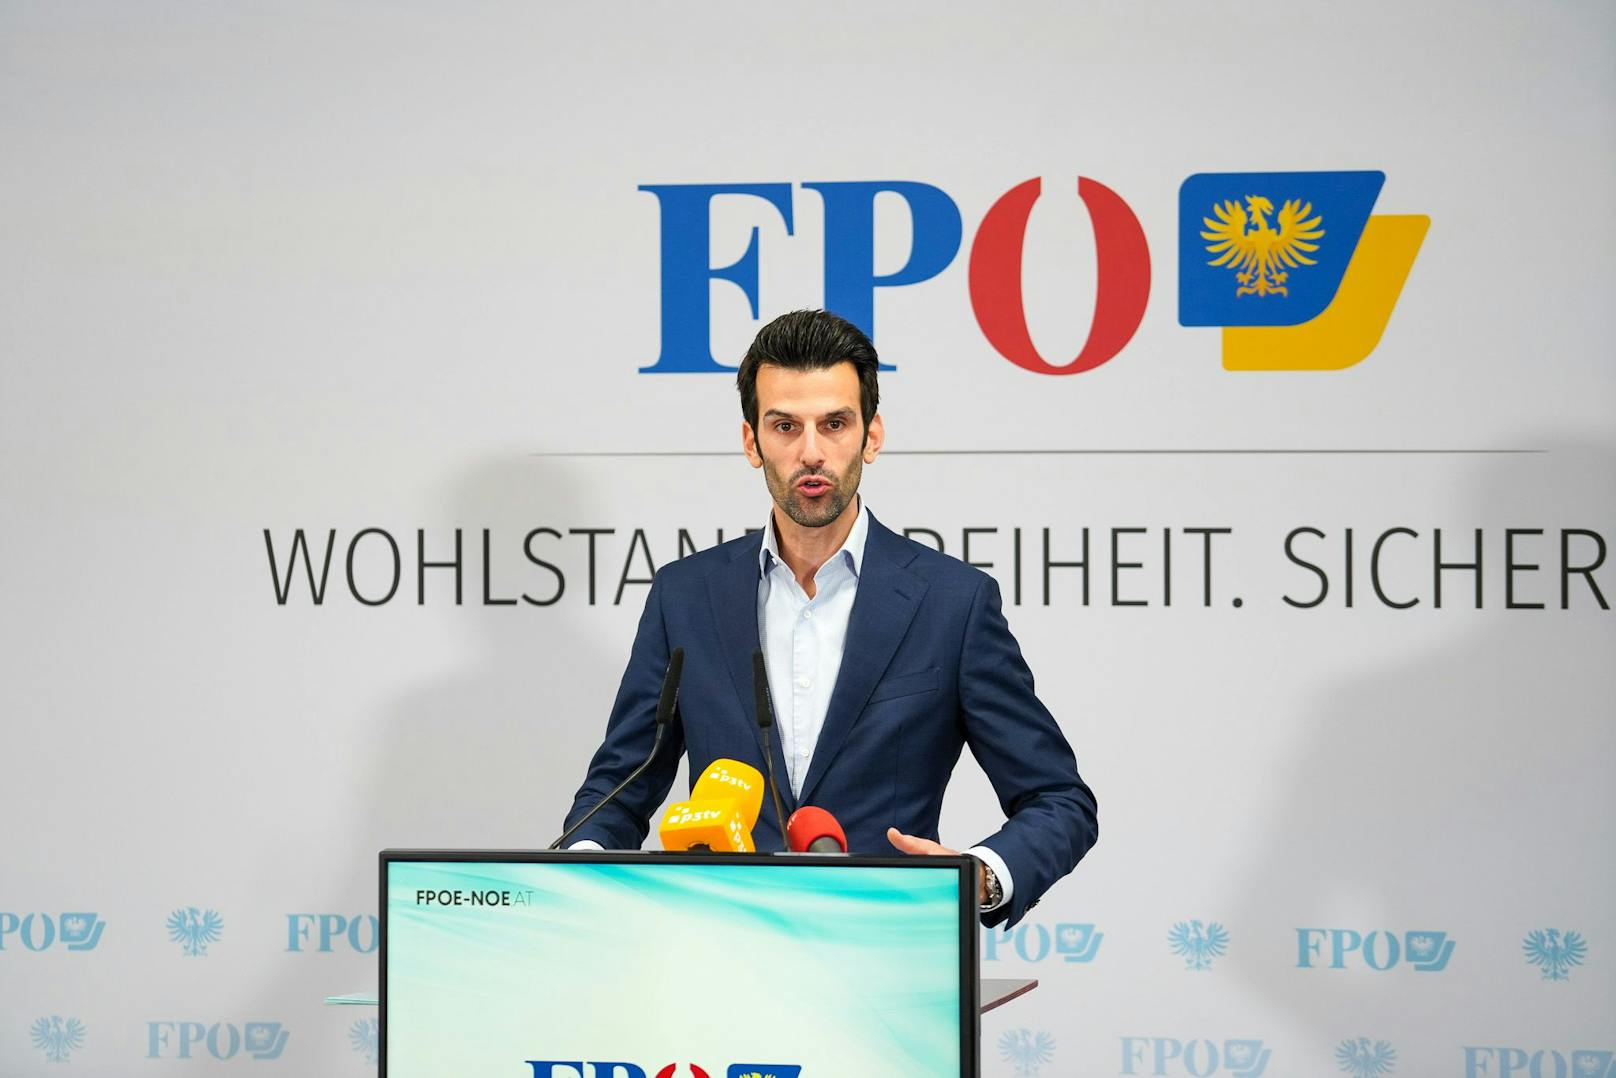 Udo Landbauer ist FPÖ Spitzenkandidat für die NÖ Landtagswahl 